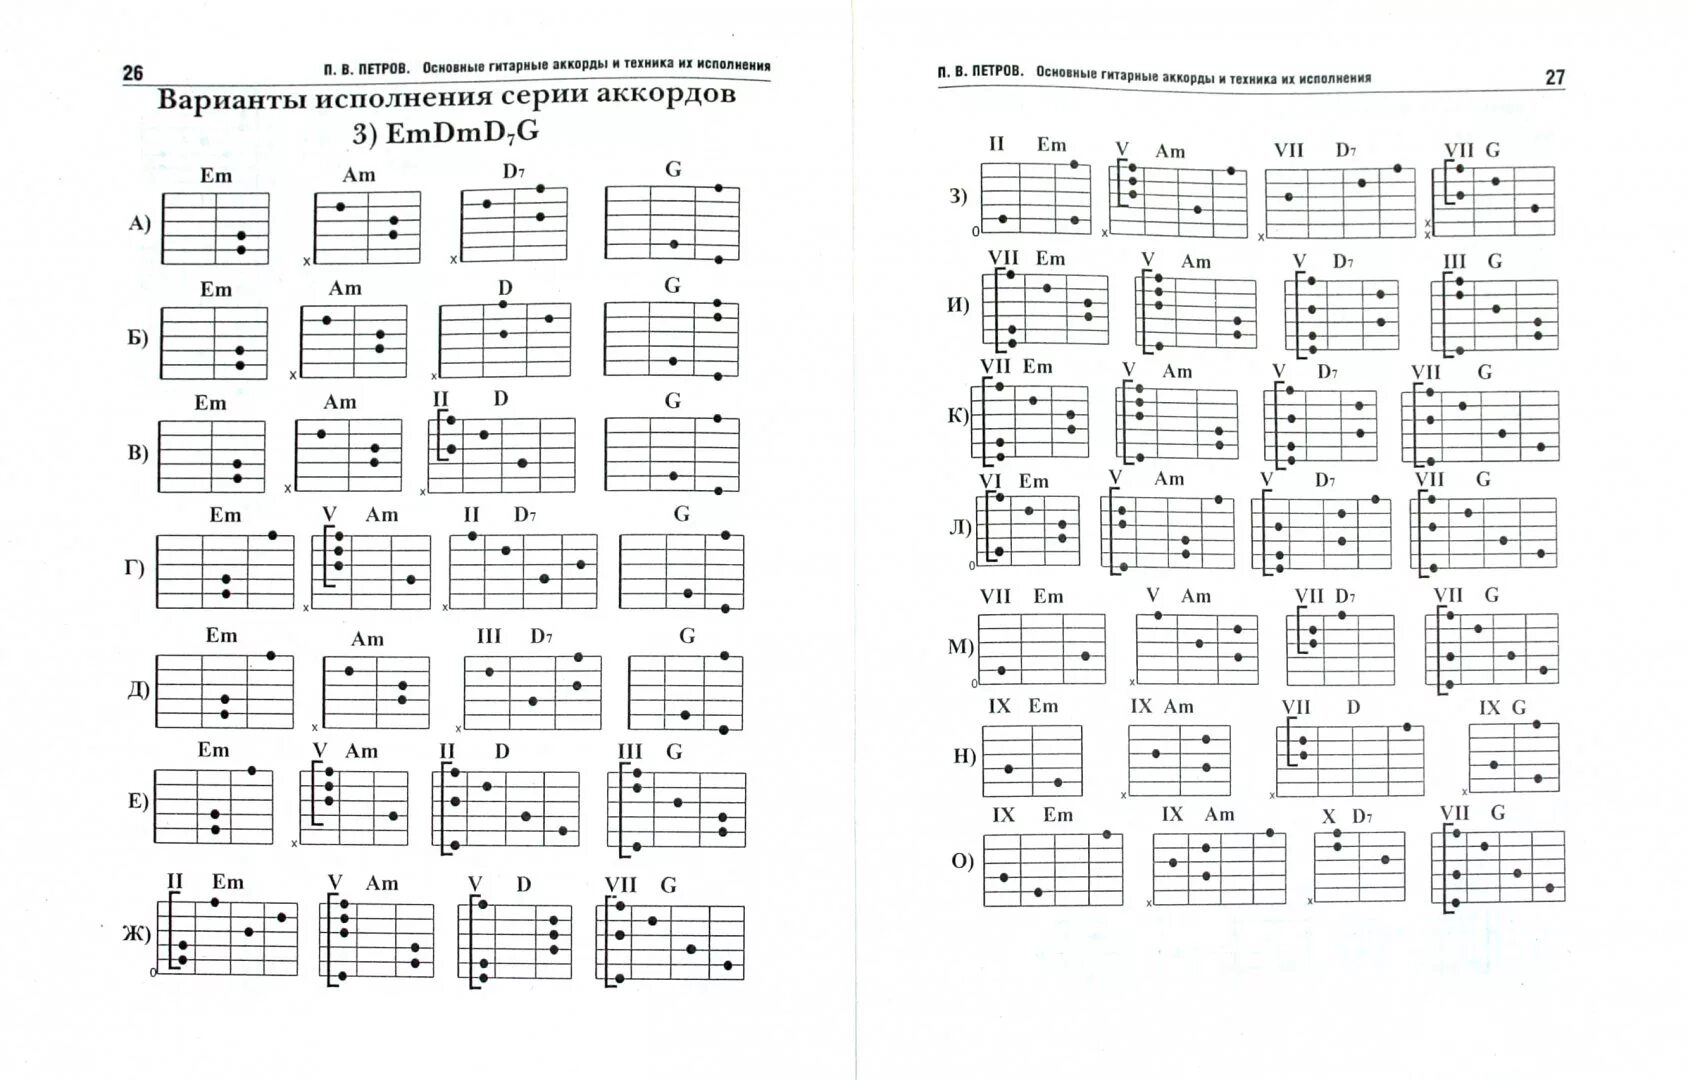 Таблица аккордов для гитары 6 струн для начинающих. Гитарные аккорды таблица для начинающих. Аккорды на 6 струнной гитаре. Таблица простых аккордов для гитары 6 струн. Таблица аккордов для начинающих